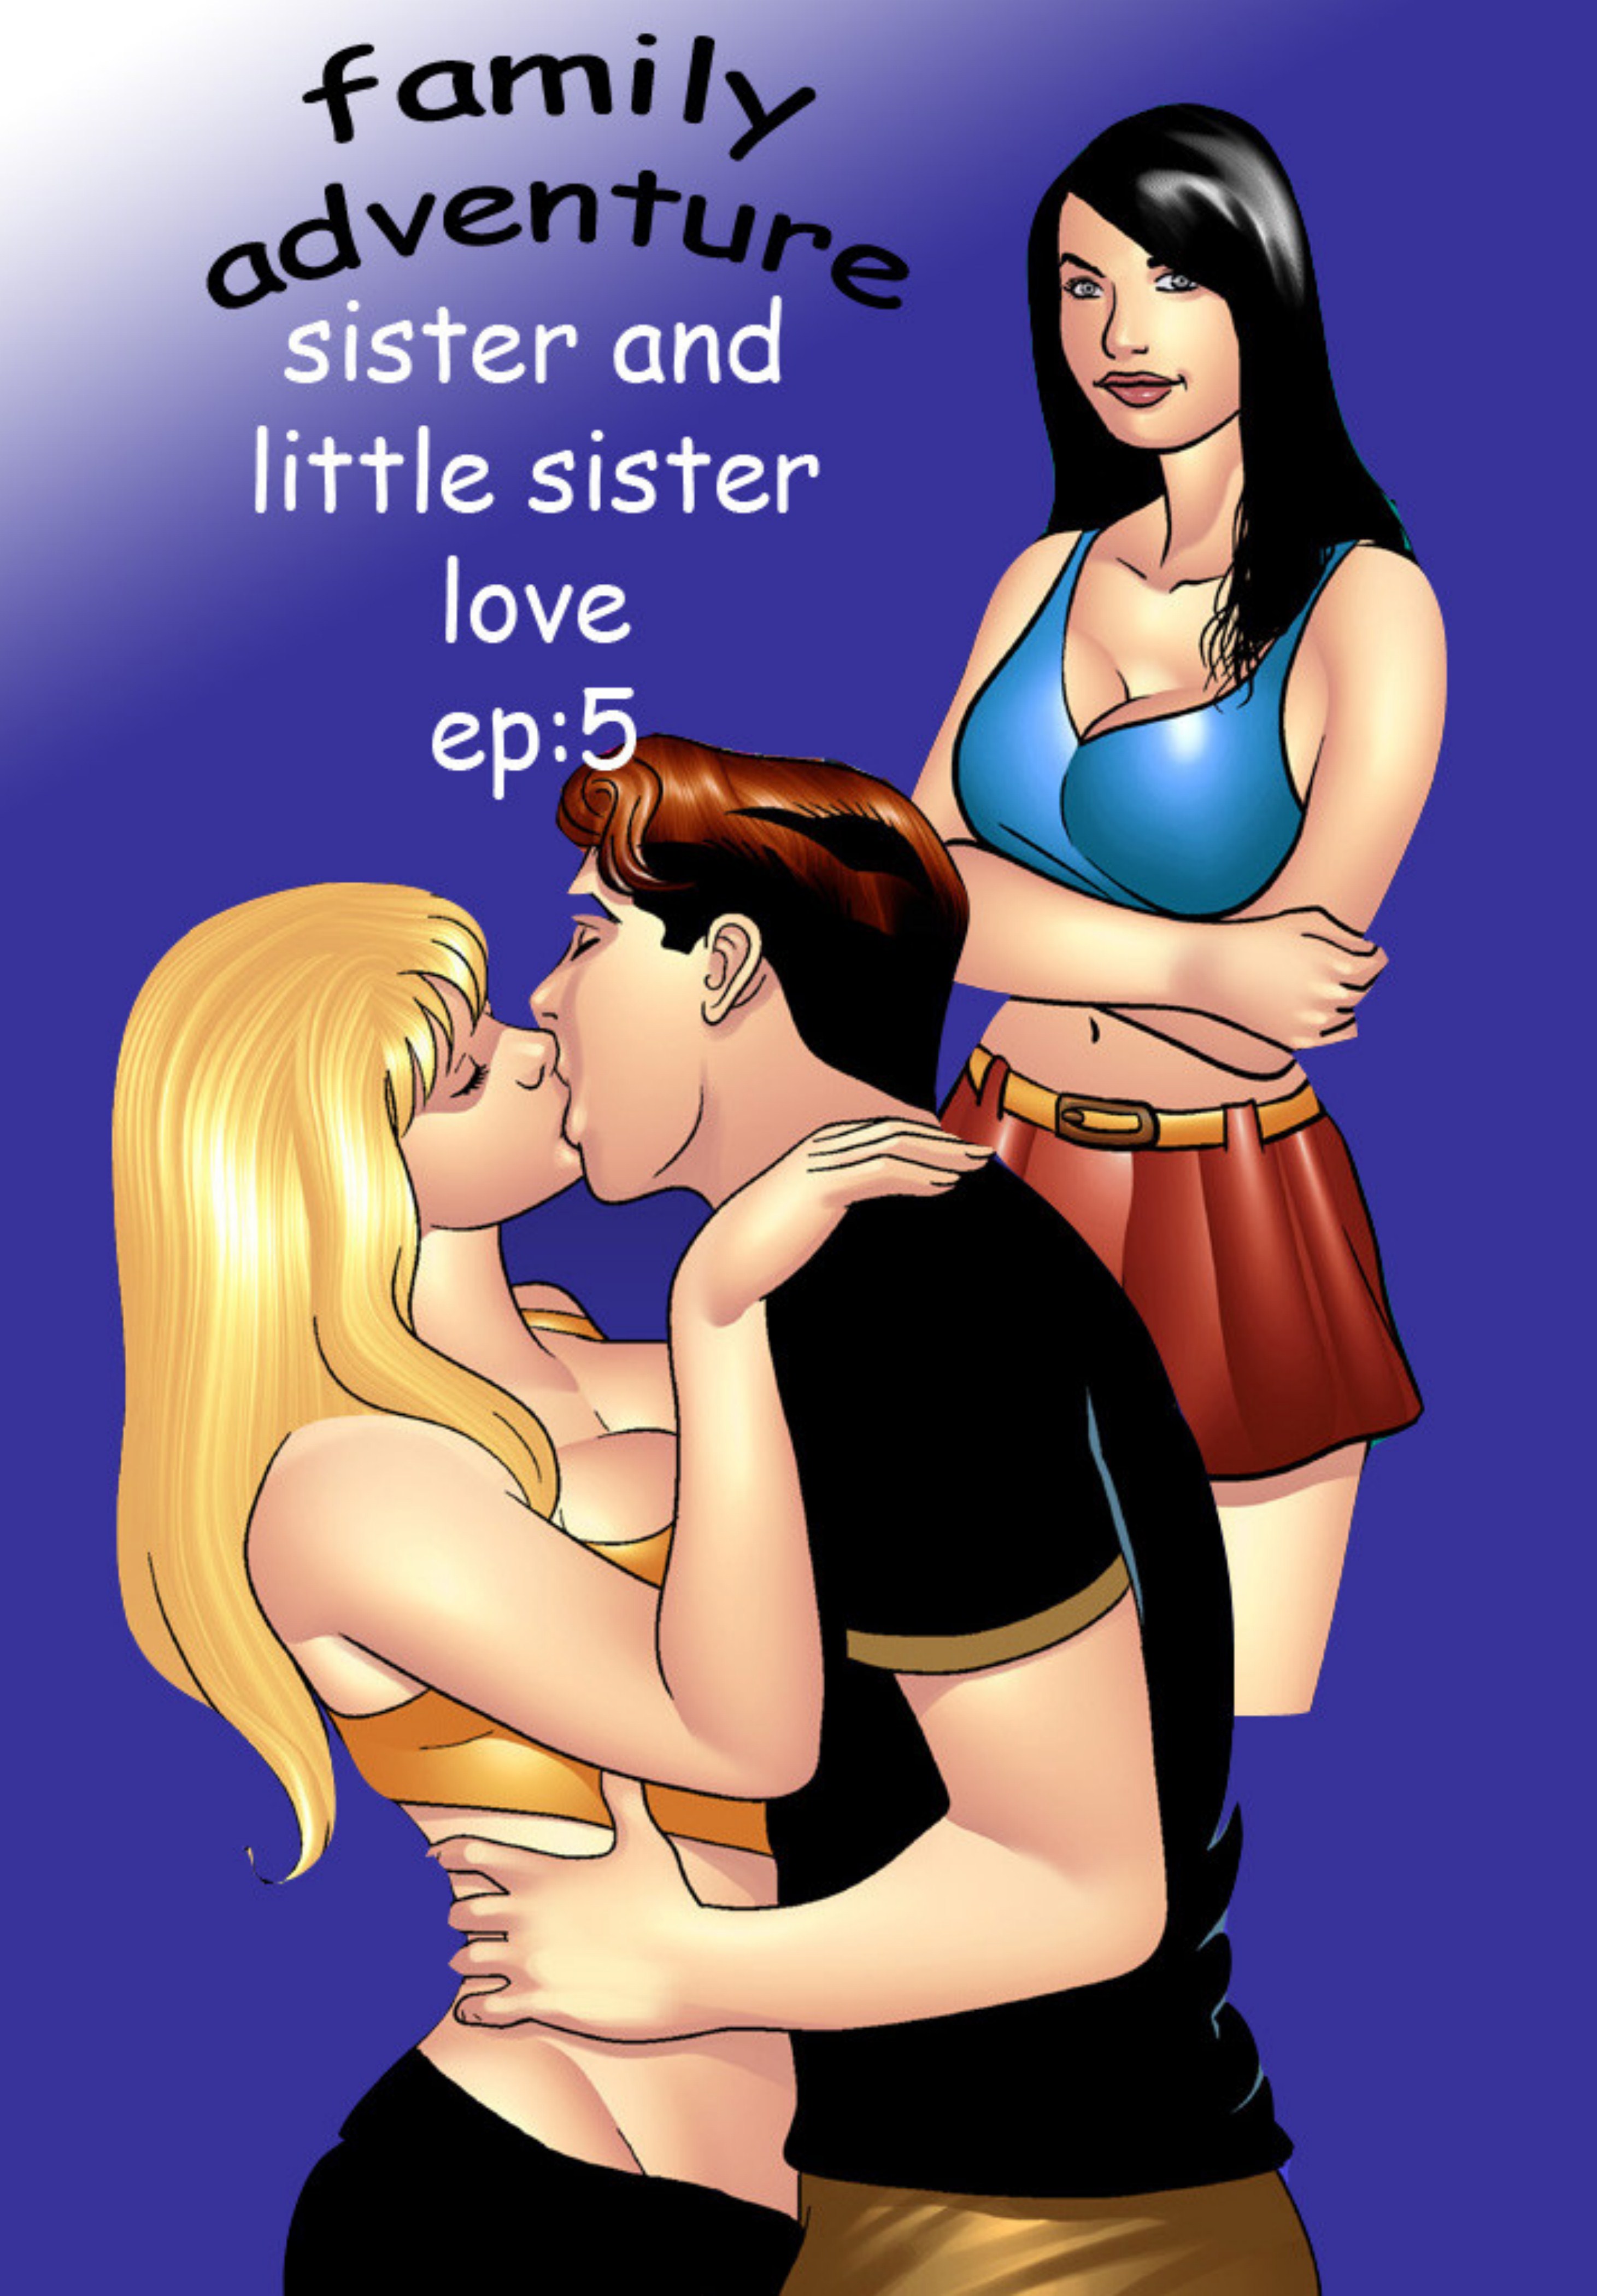 Sister & little sister love- Family adventure 5 image 01